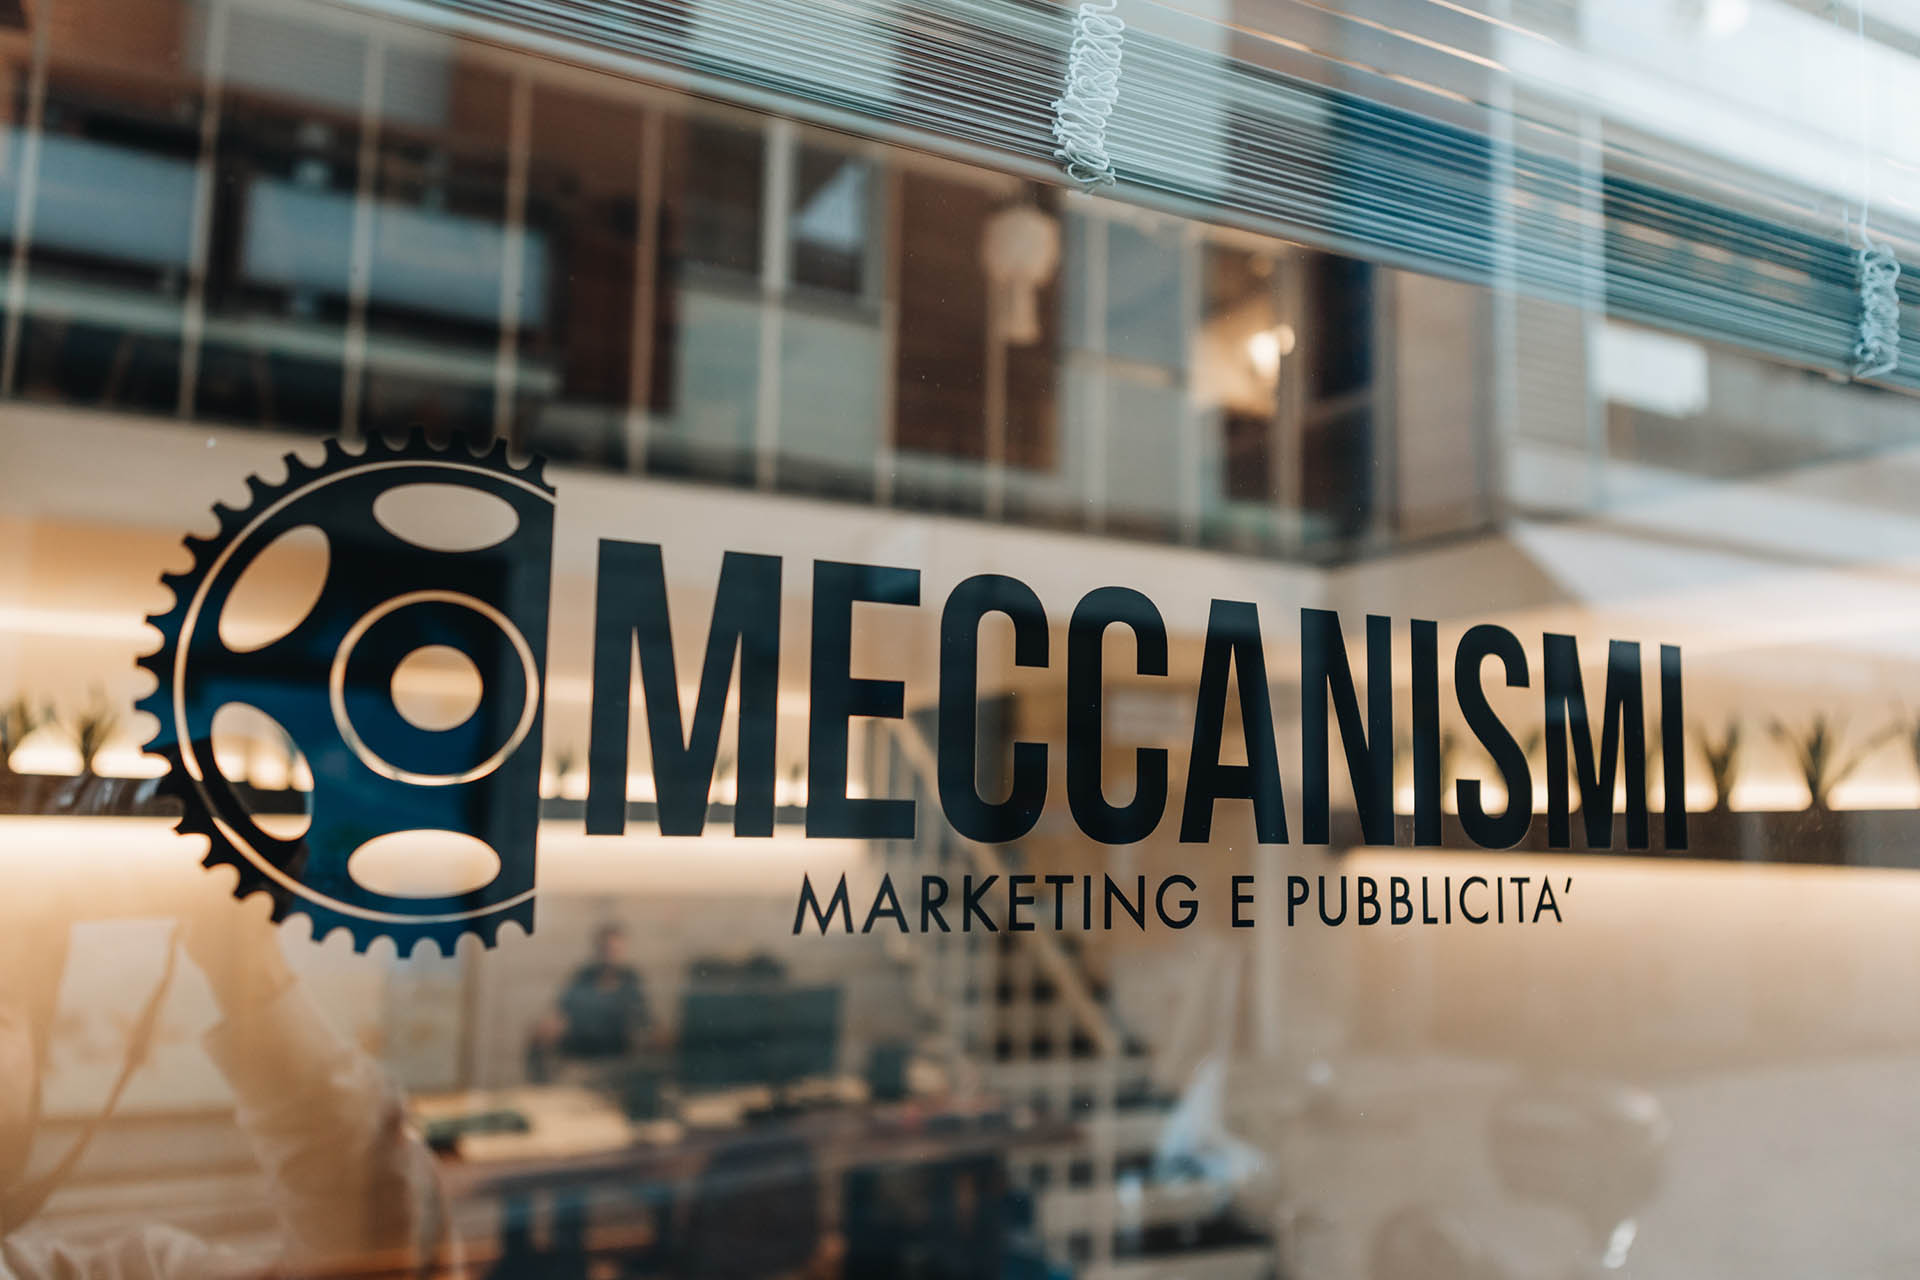 Meccanismi - Marketing e Pubblicità